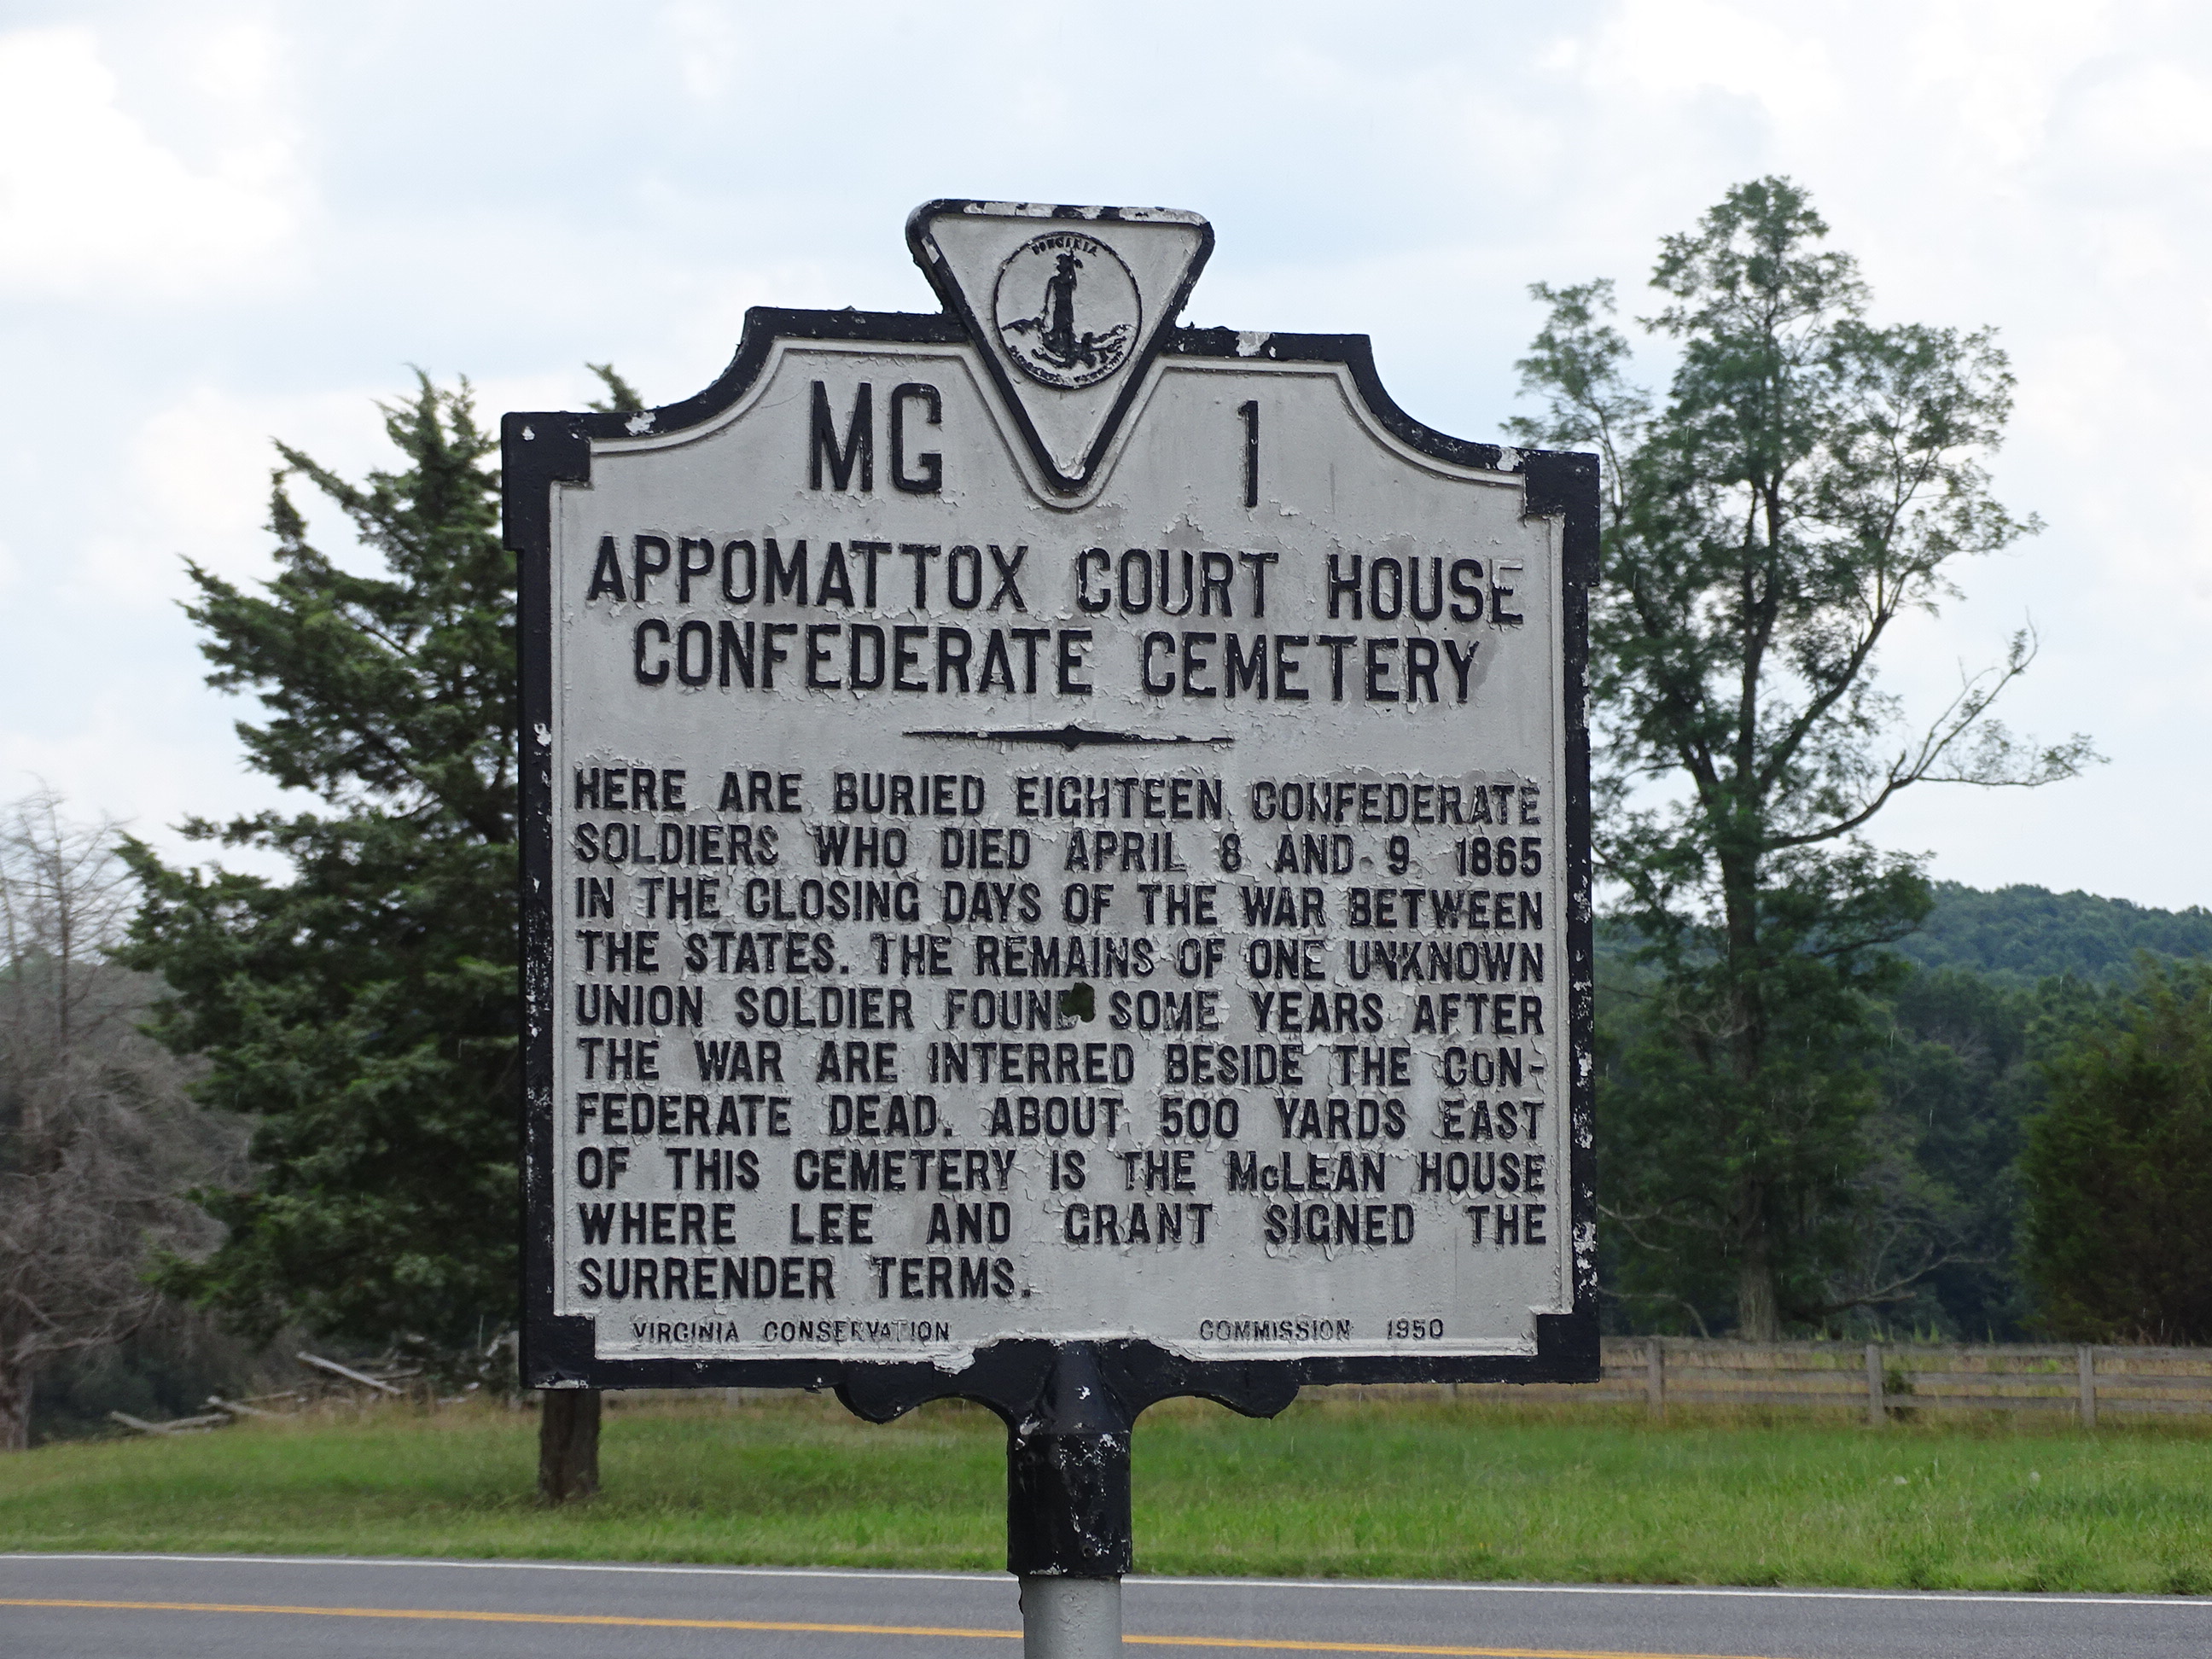 The Appomattox Confederate Cemetery paranormal